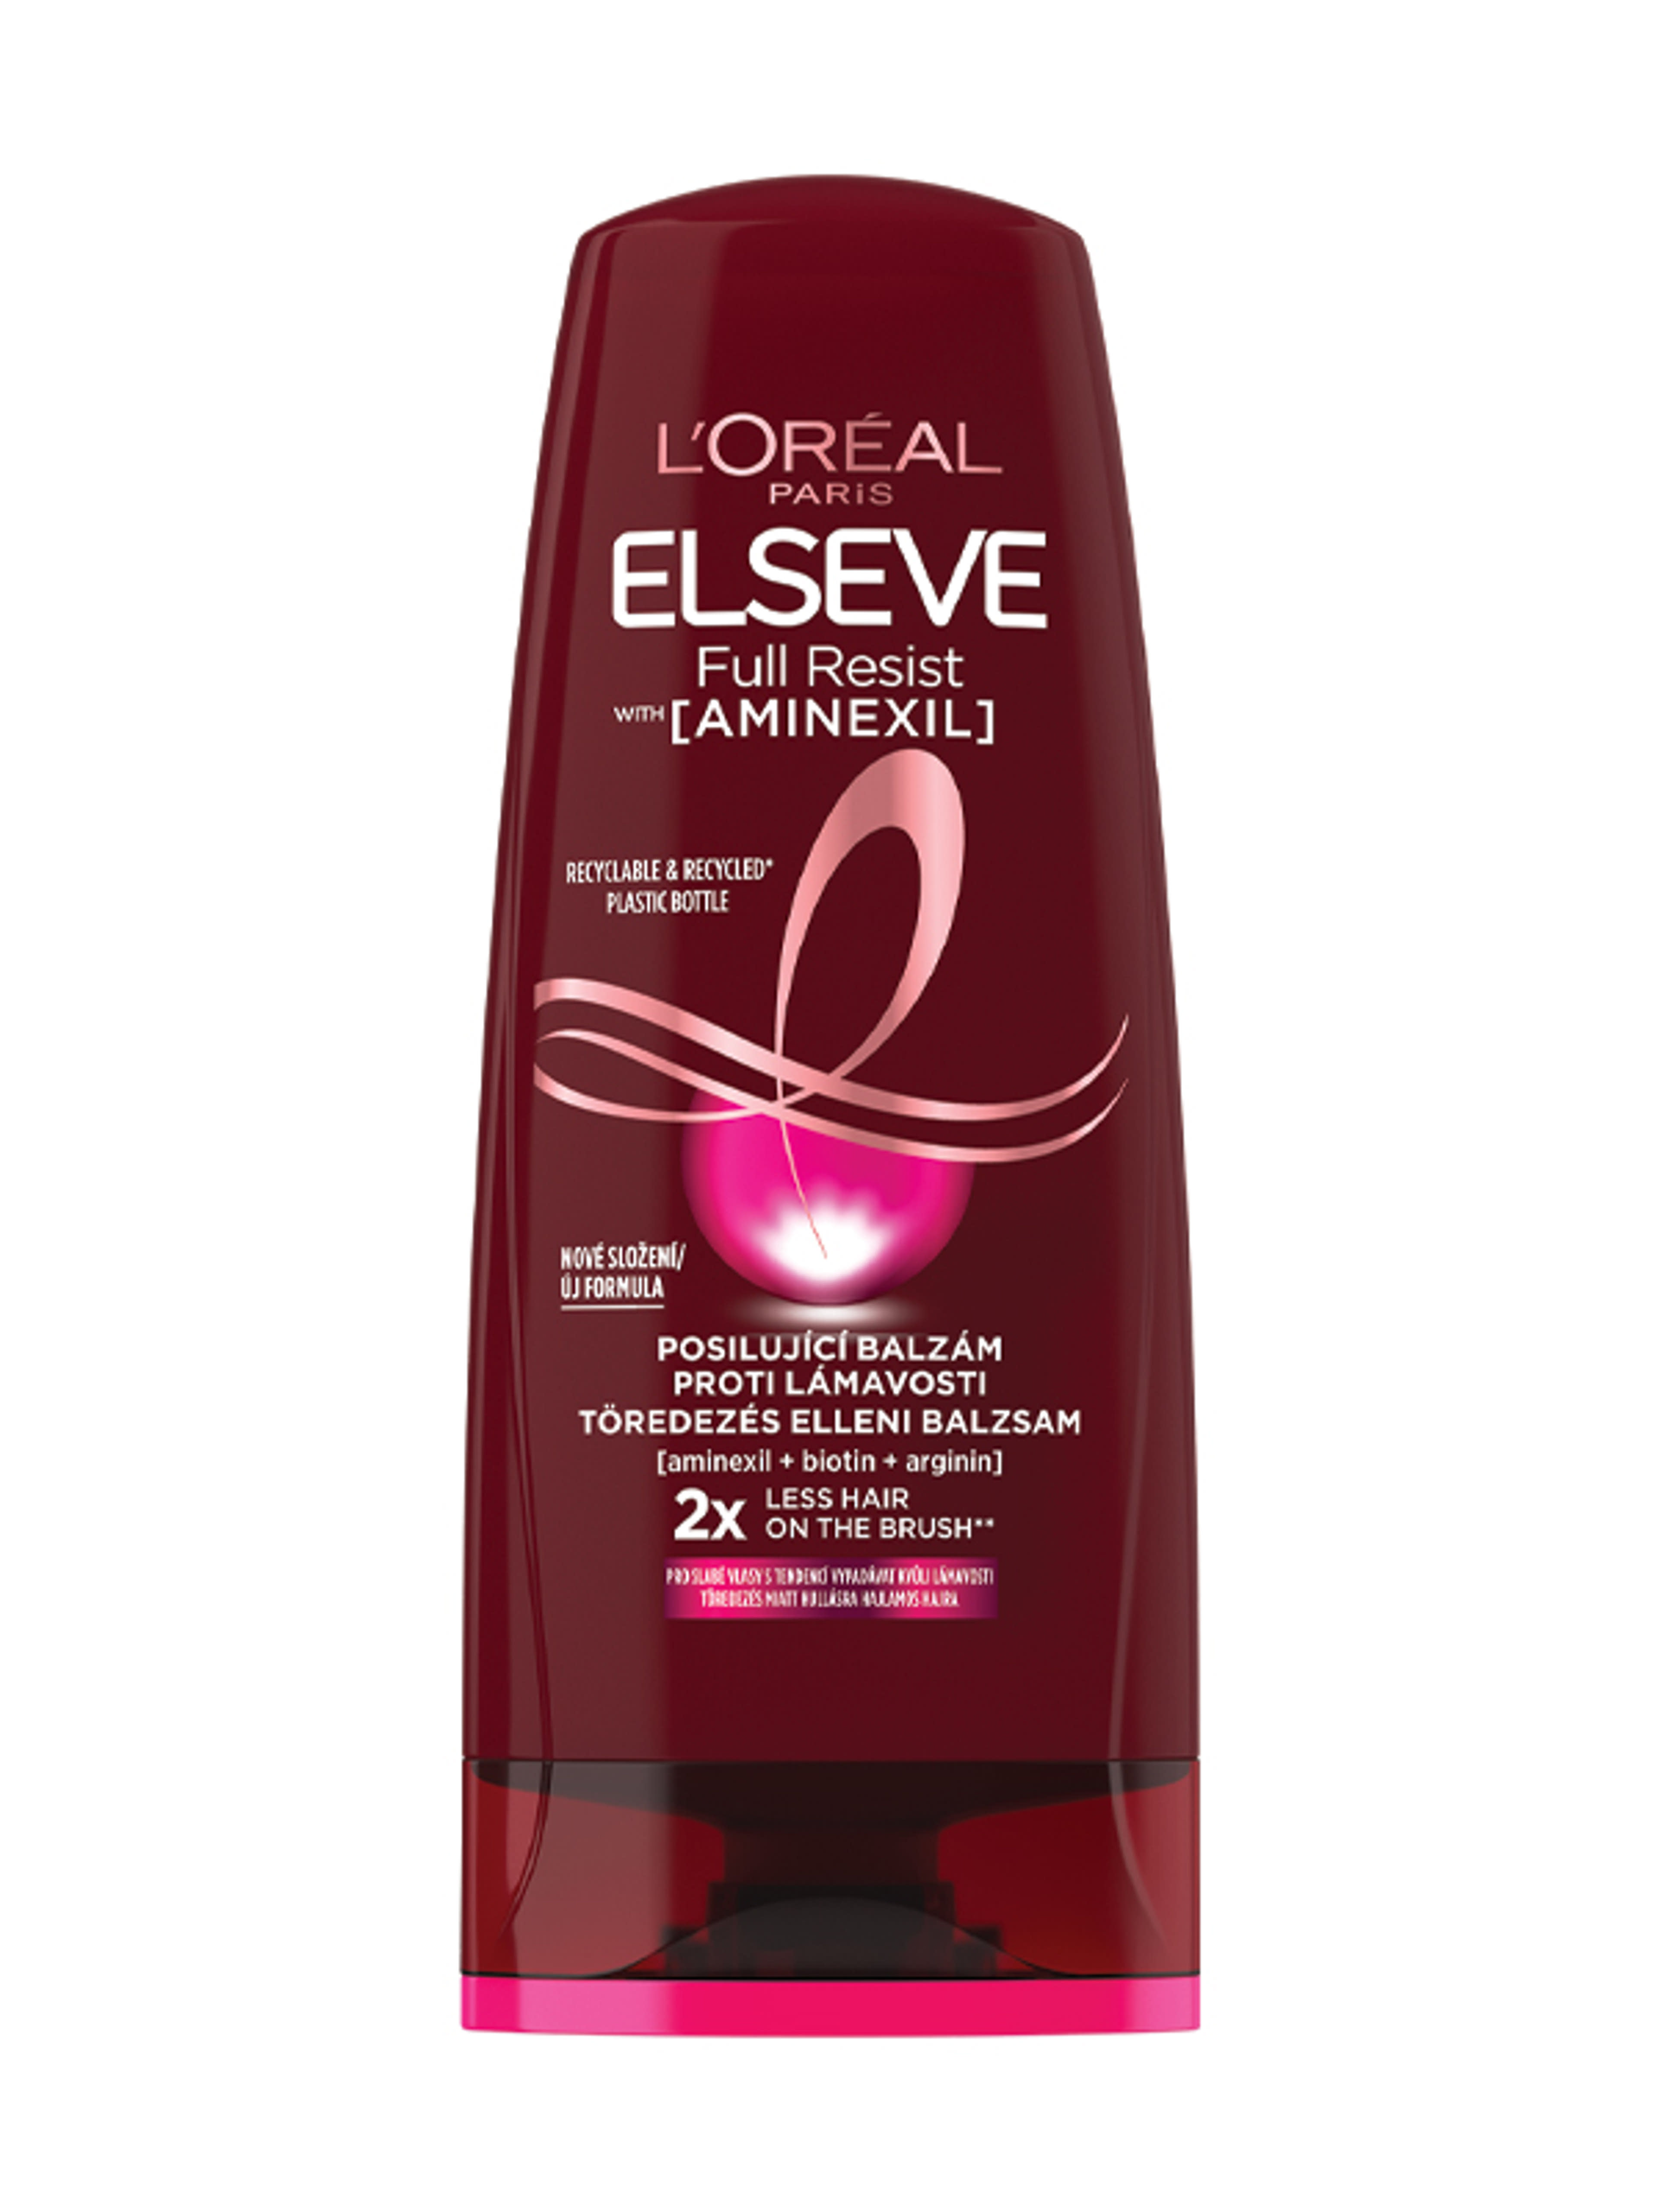 L'Oréal Paris Elseve Full Resist hajerősítő balzsam gyenge, hullásra hajlamos hajra - 200 ml